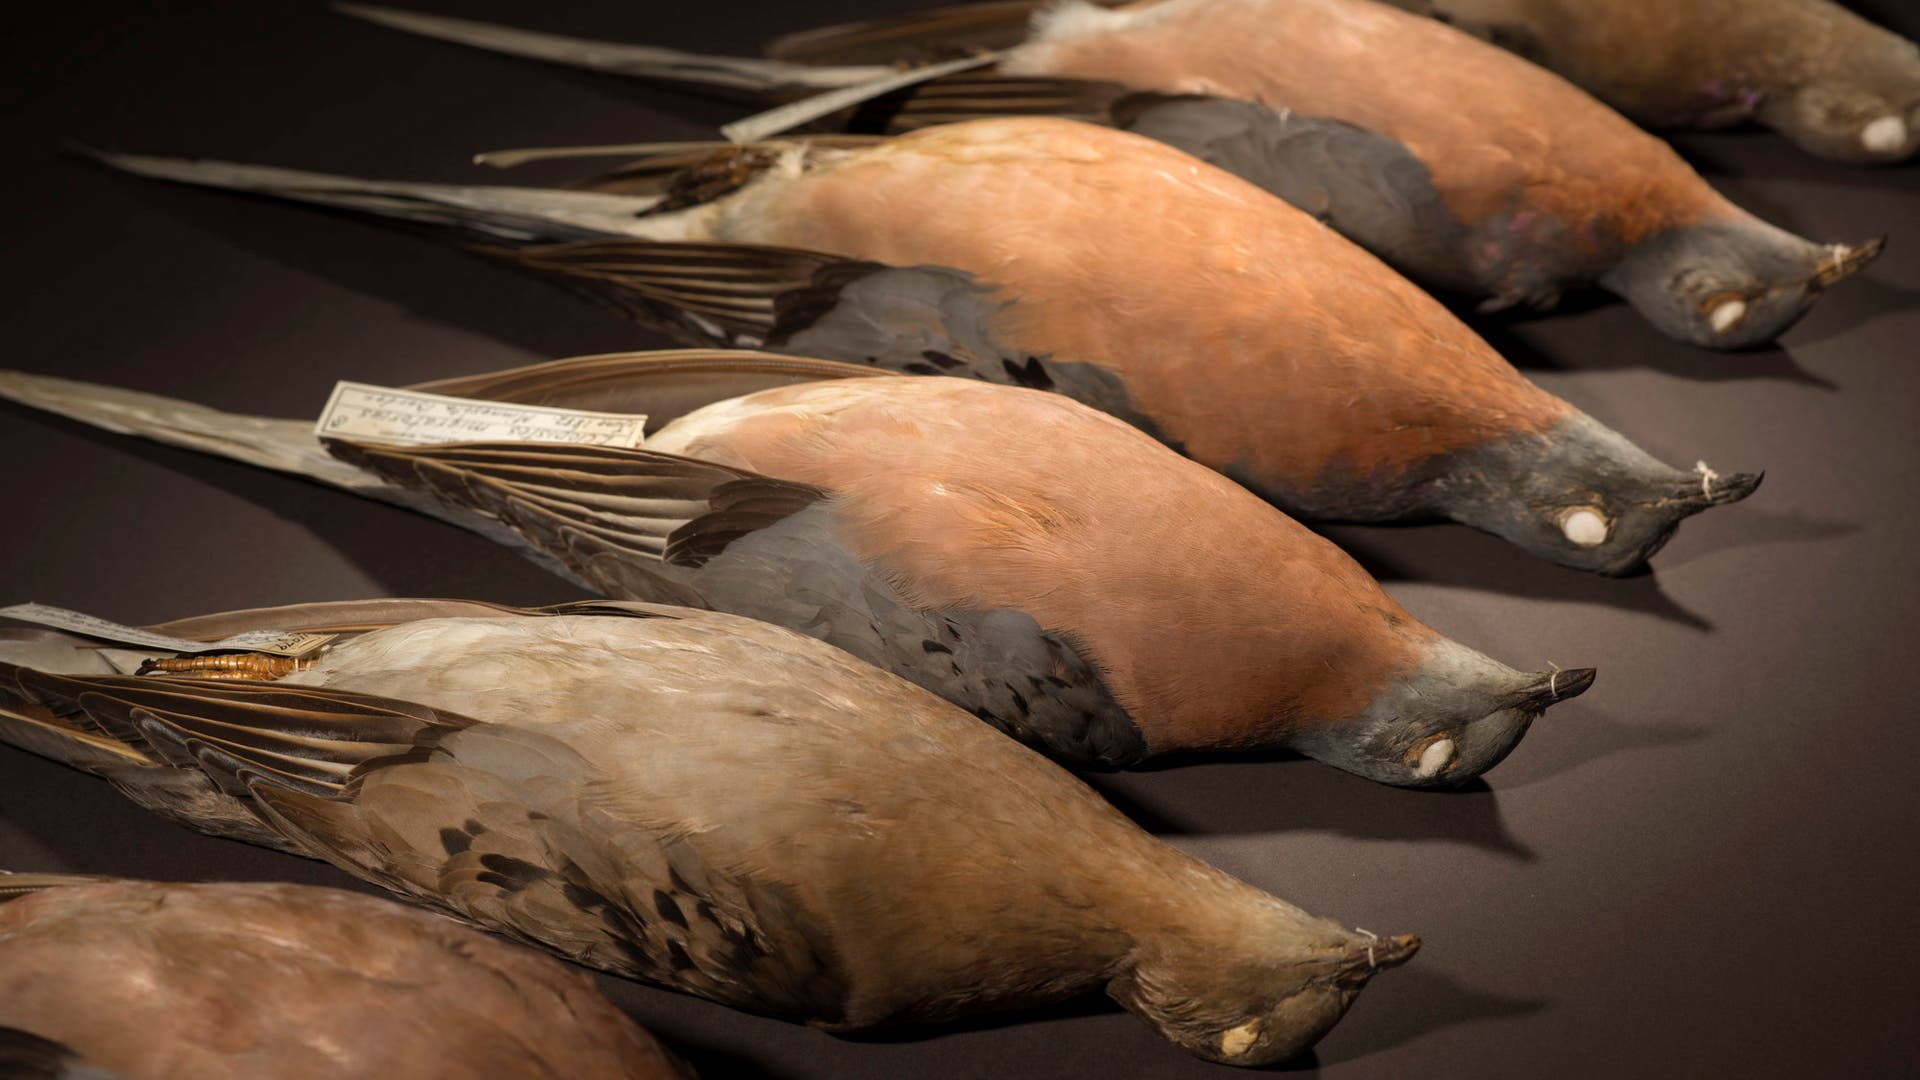 Причины вымирания птиц